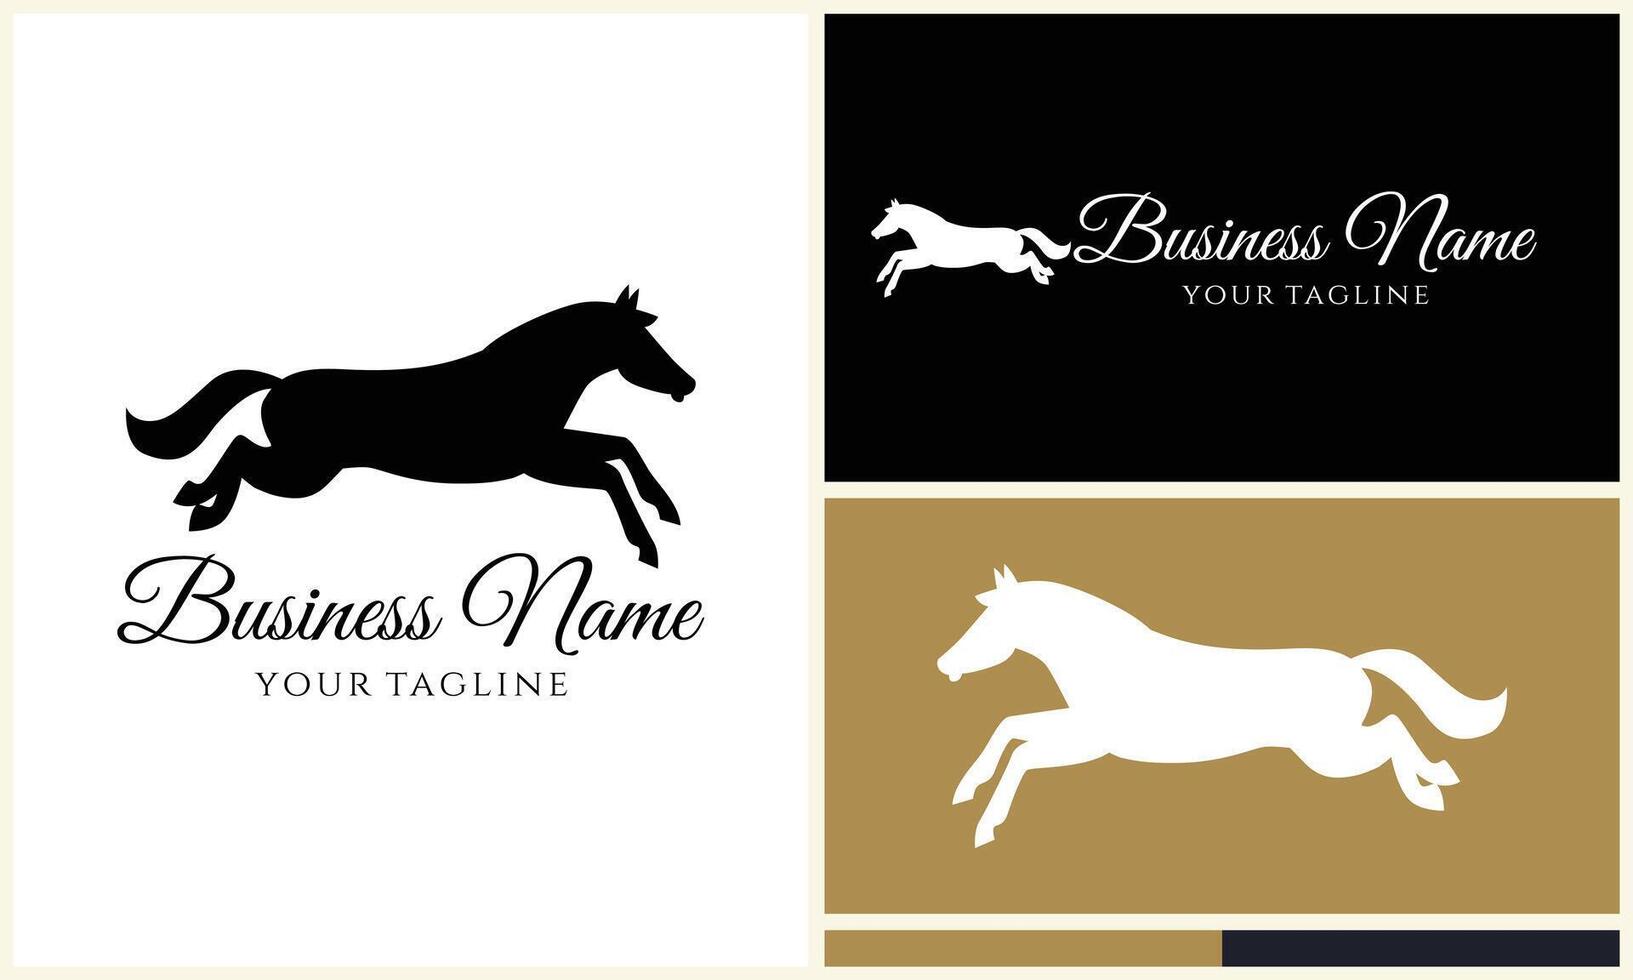 silhouette cowboy horseman logo template vector